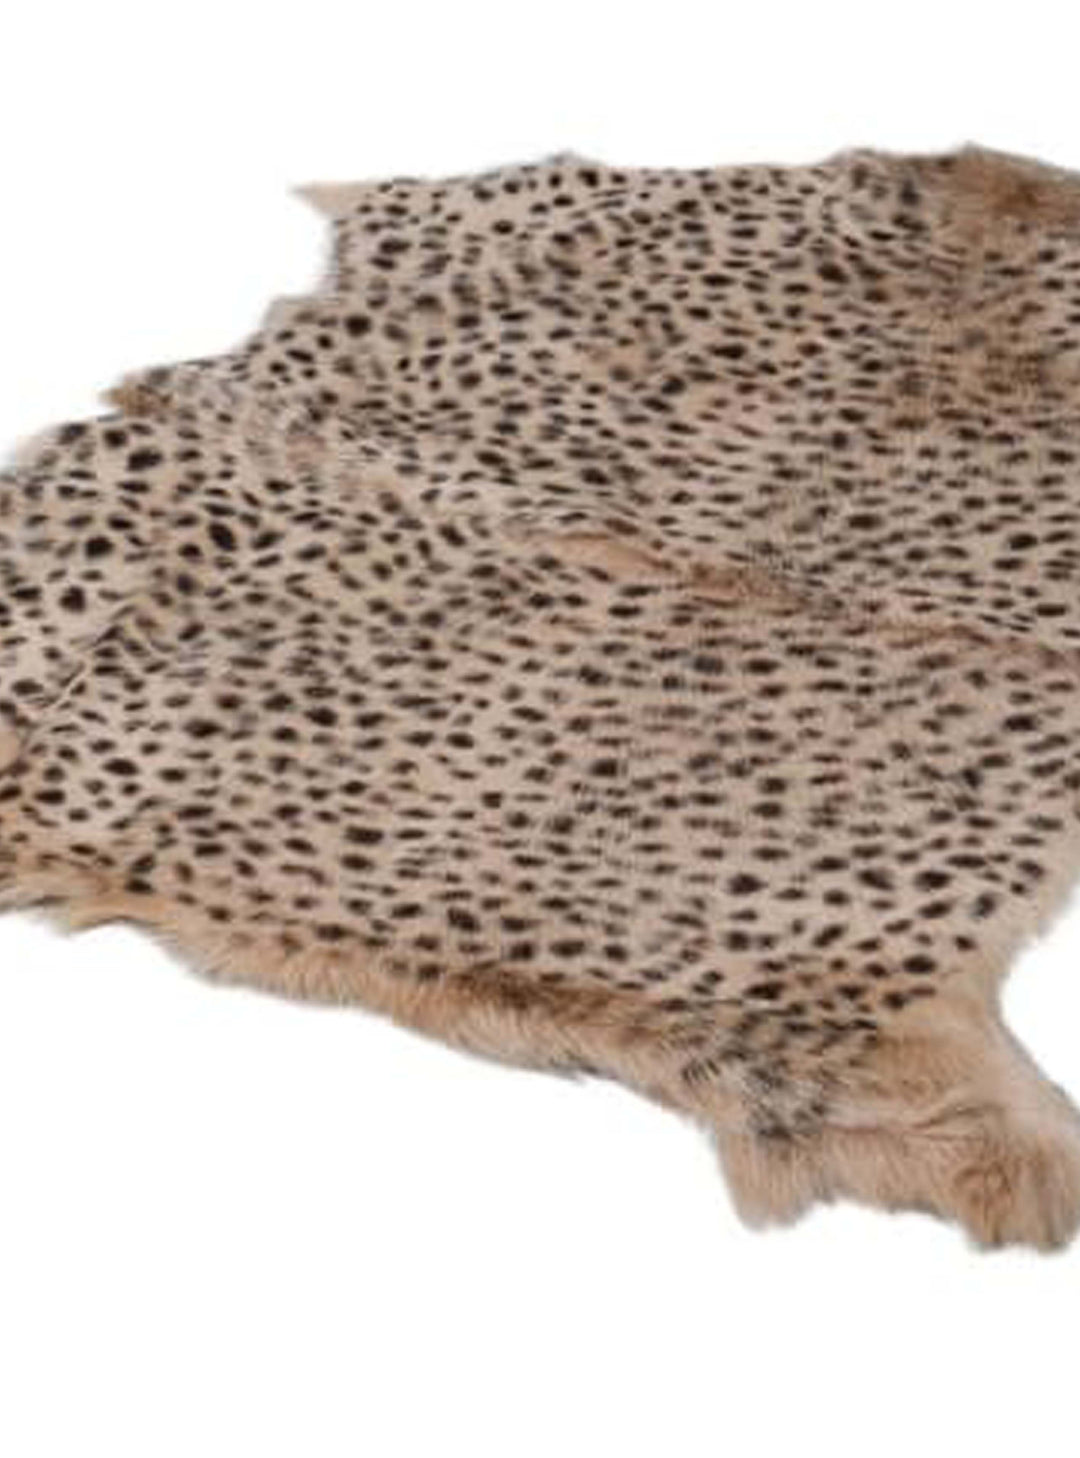 Leopard Print  Fur Rug, Goat rug, cow hide